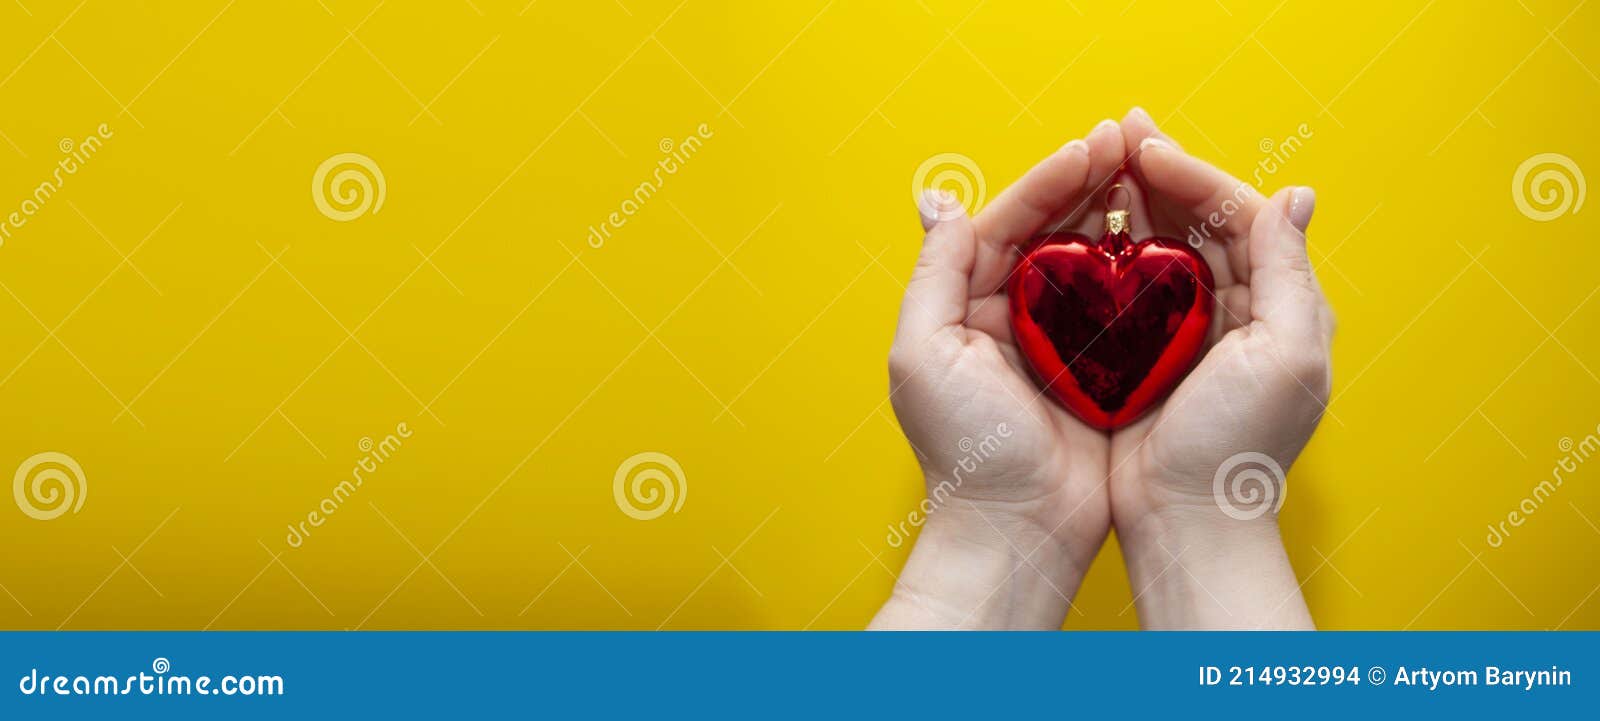 Ёлочные игрушки в форме сердца